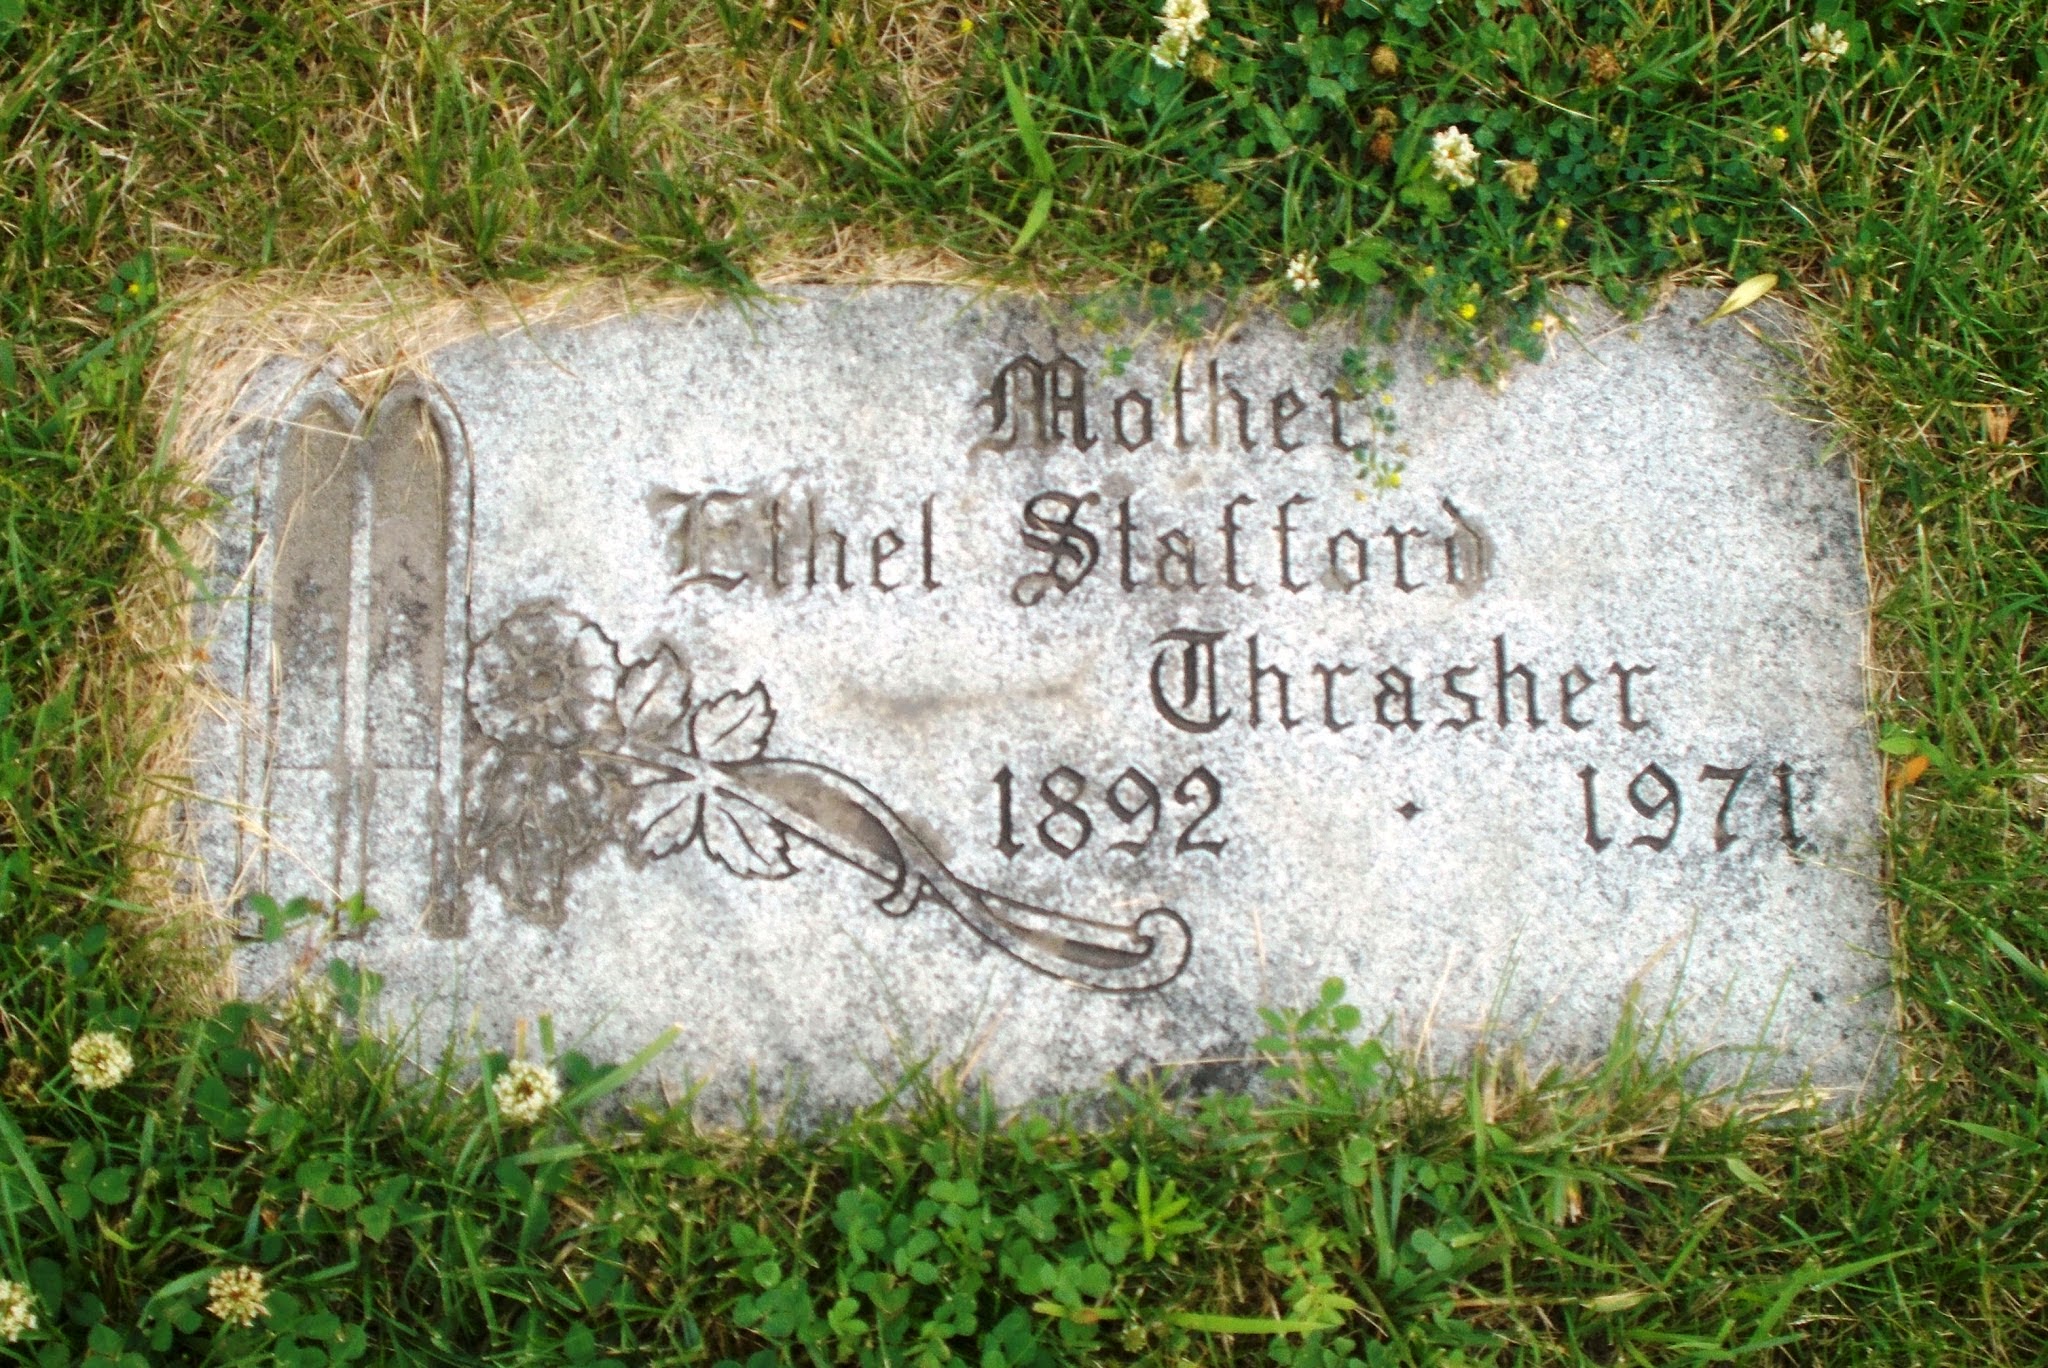 Ethel Stafford Thrasher